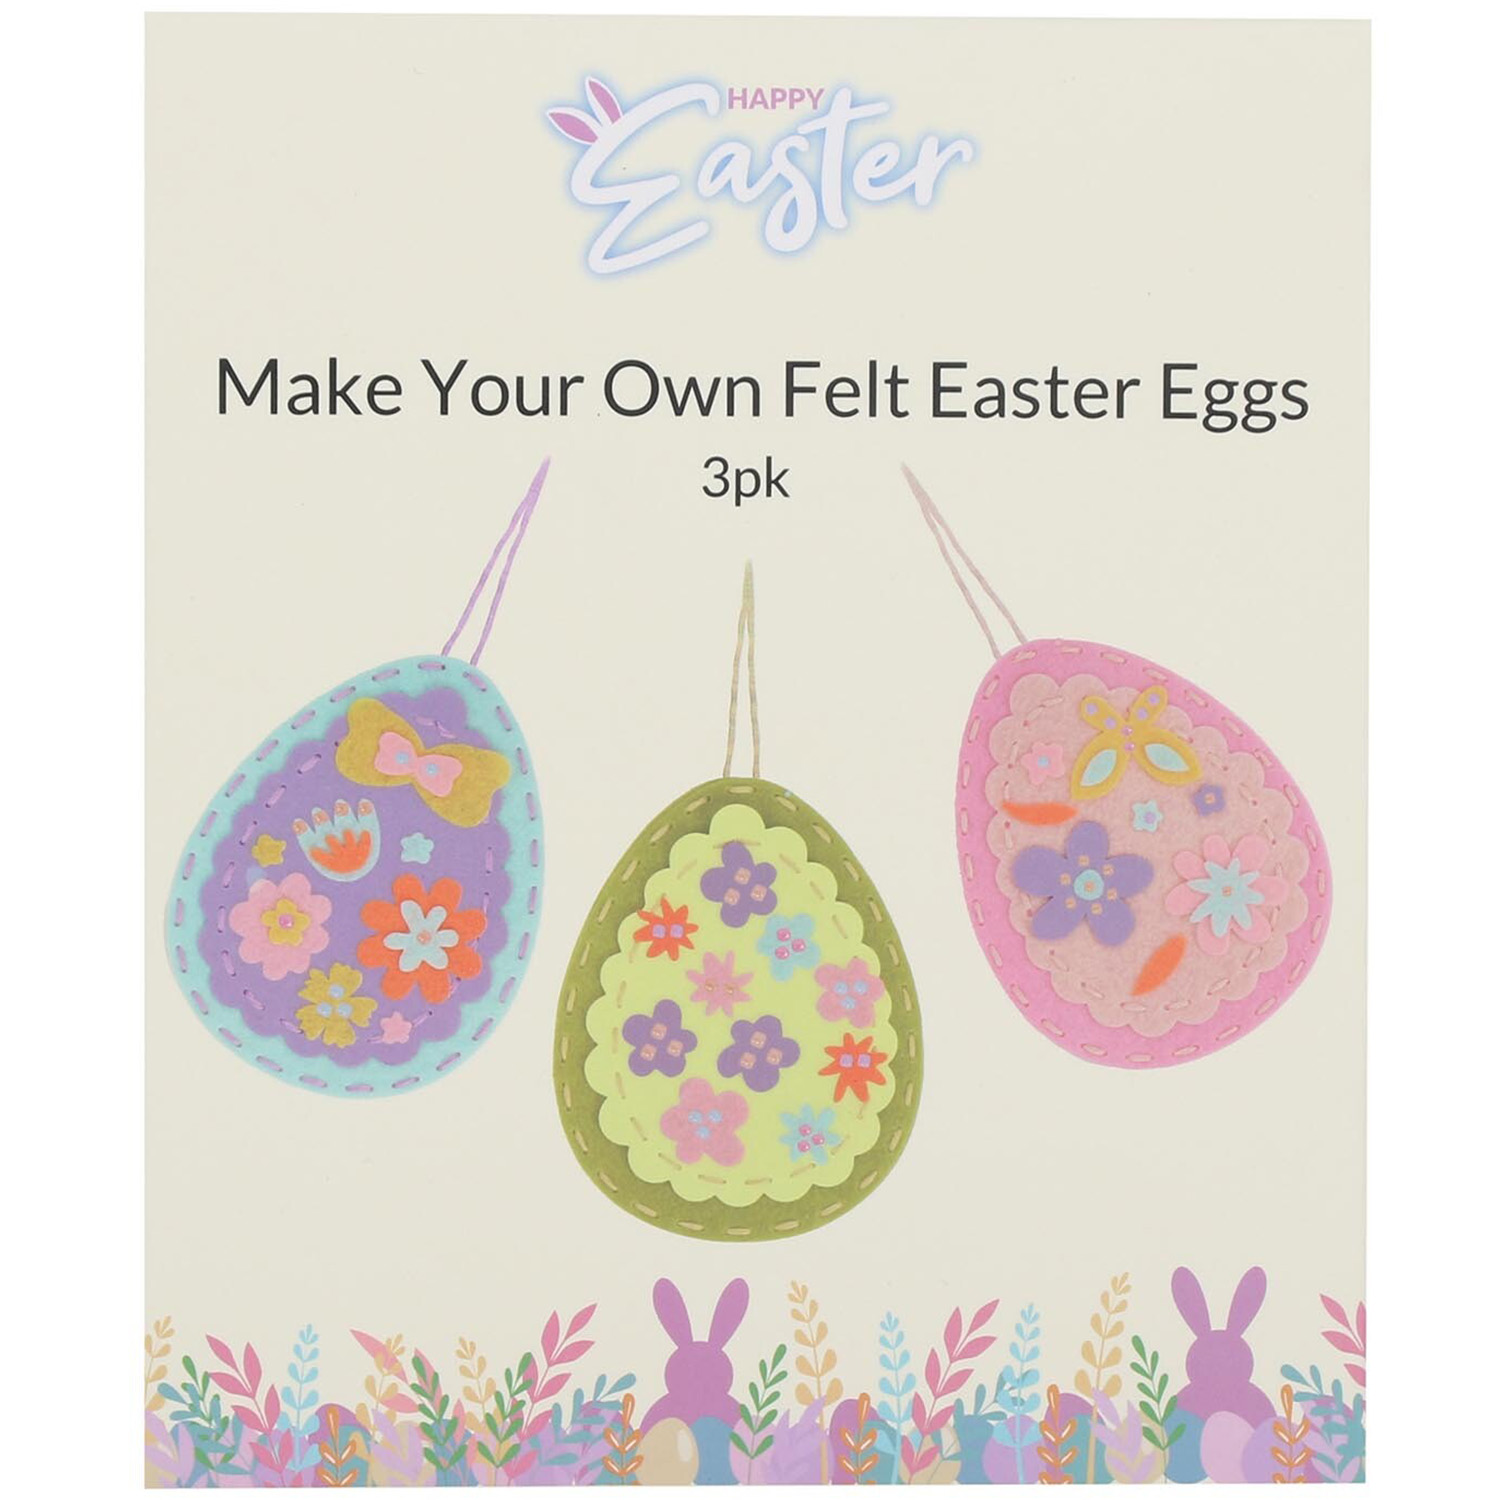 Make Your Own Felt Easter Eggs Image 1